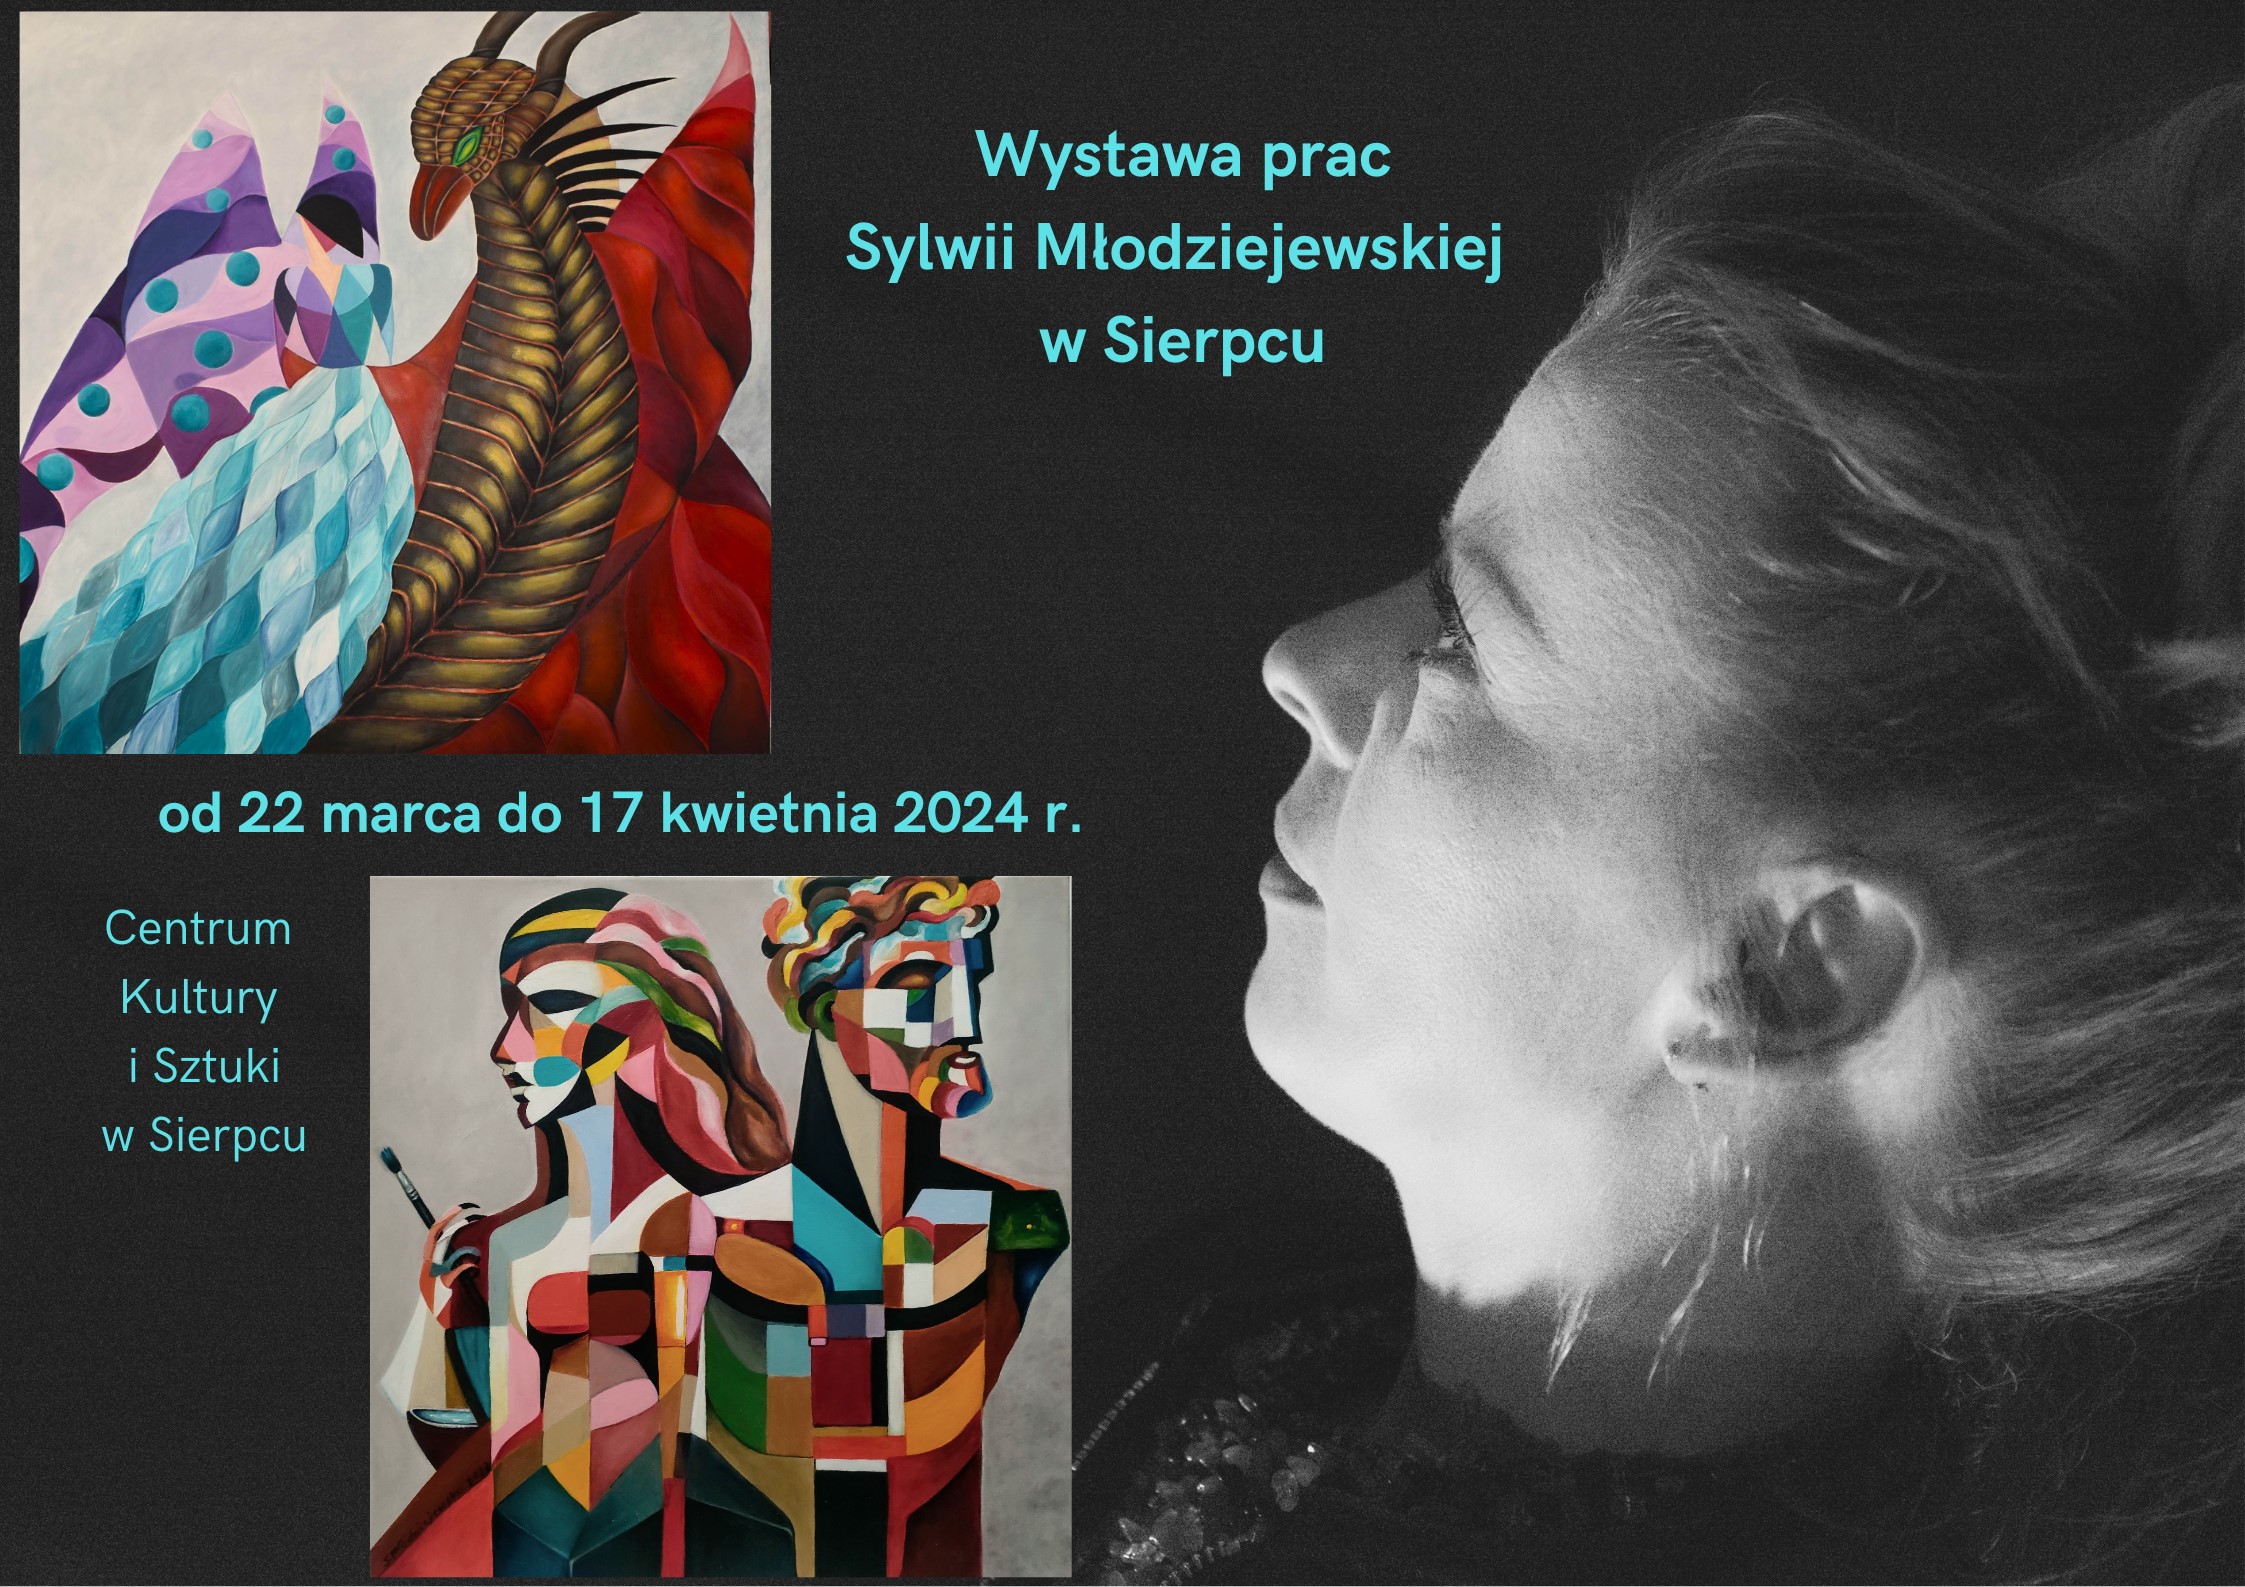 Wystawa prac pocczanki Sylwii Modzie­jewskiej w Sierpcu, CKiSz od 22 marca do 17 kwietnia 2024 r.